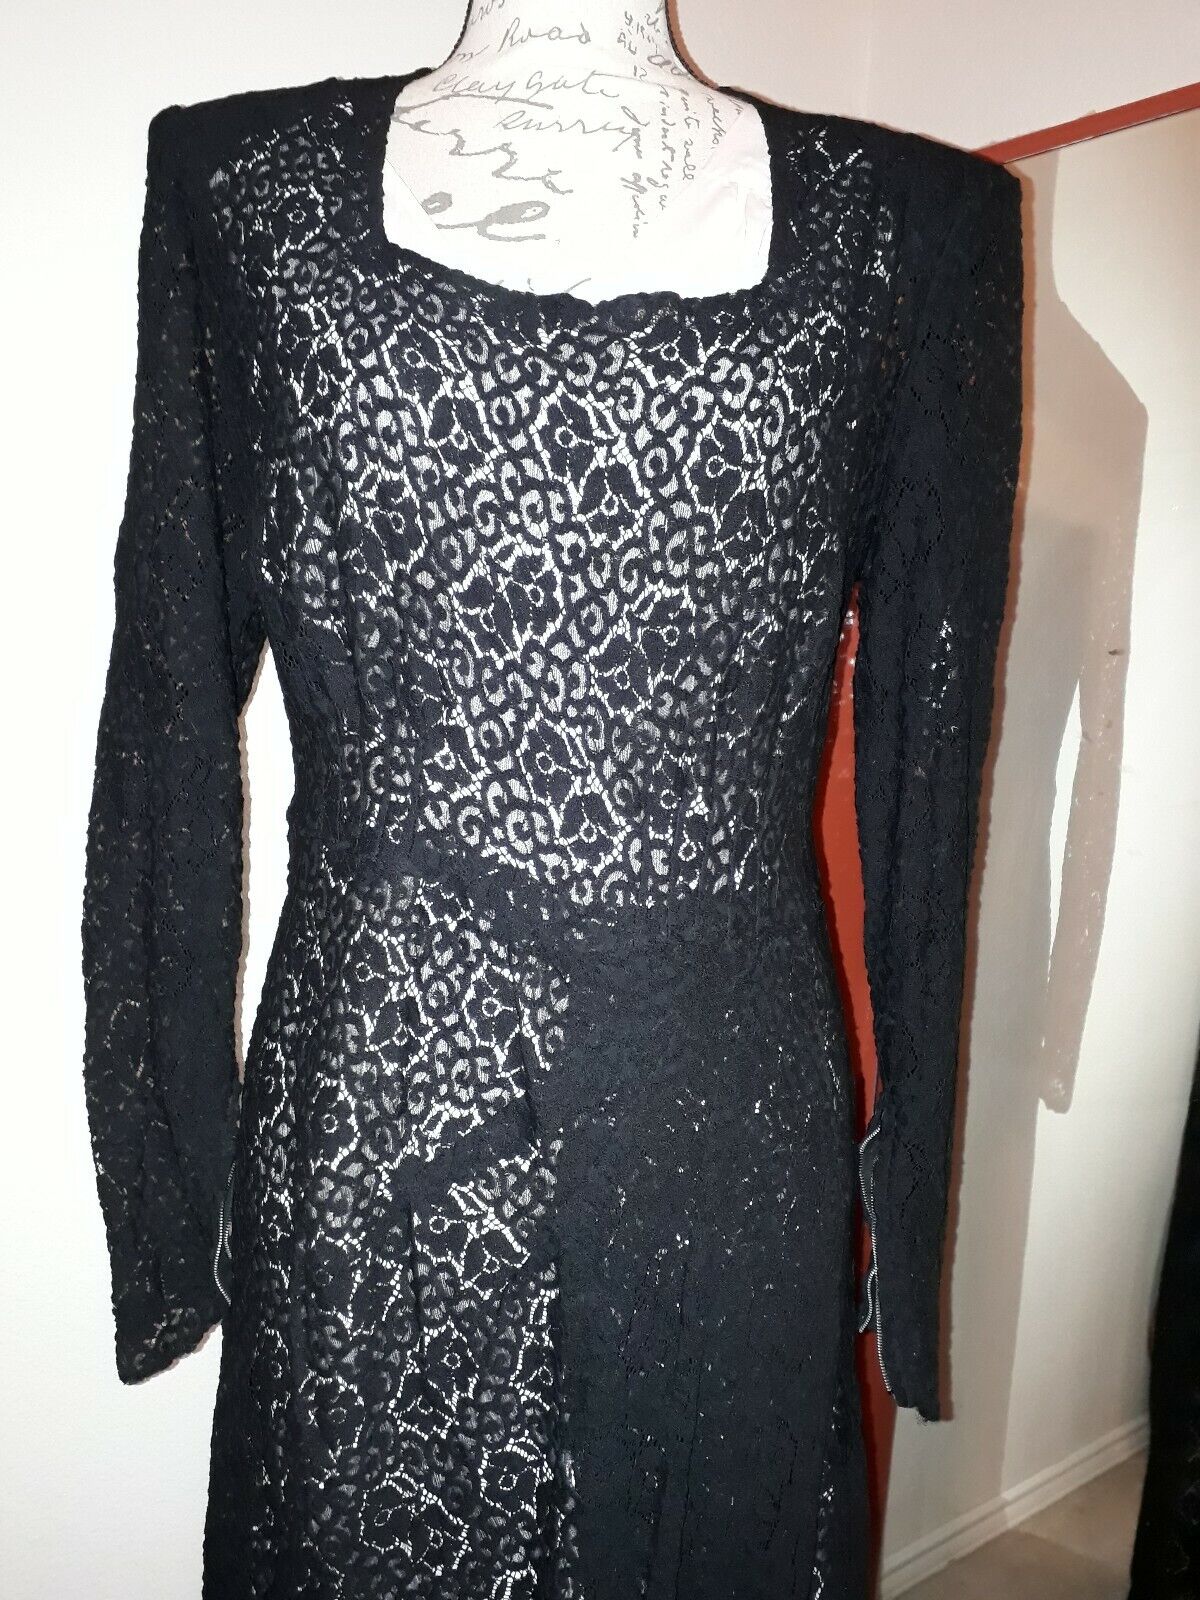 Vintage 1930s? 40s? Evening Gown Black Lace Dress… - image 1